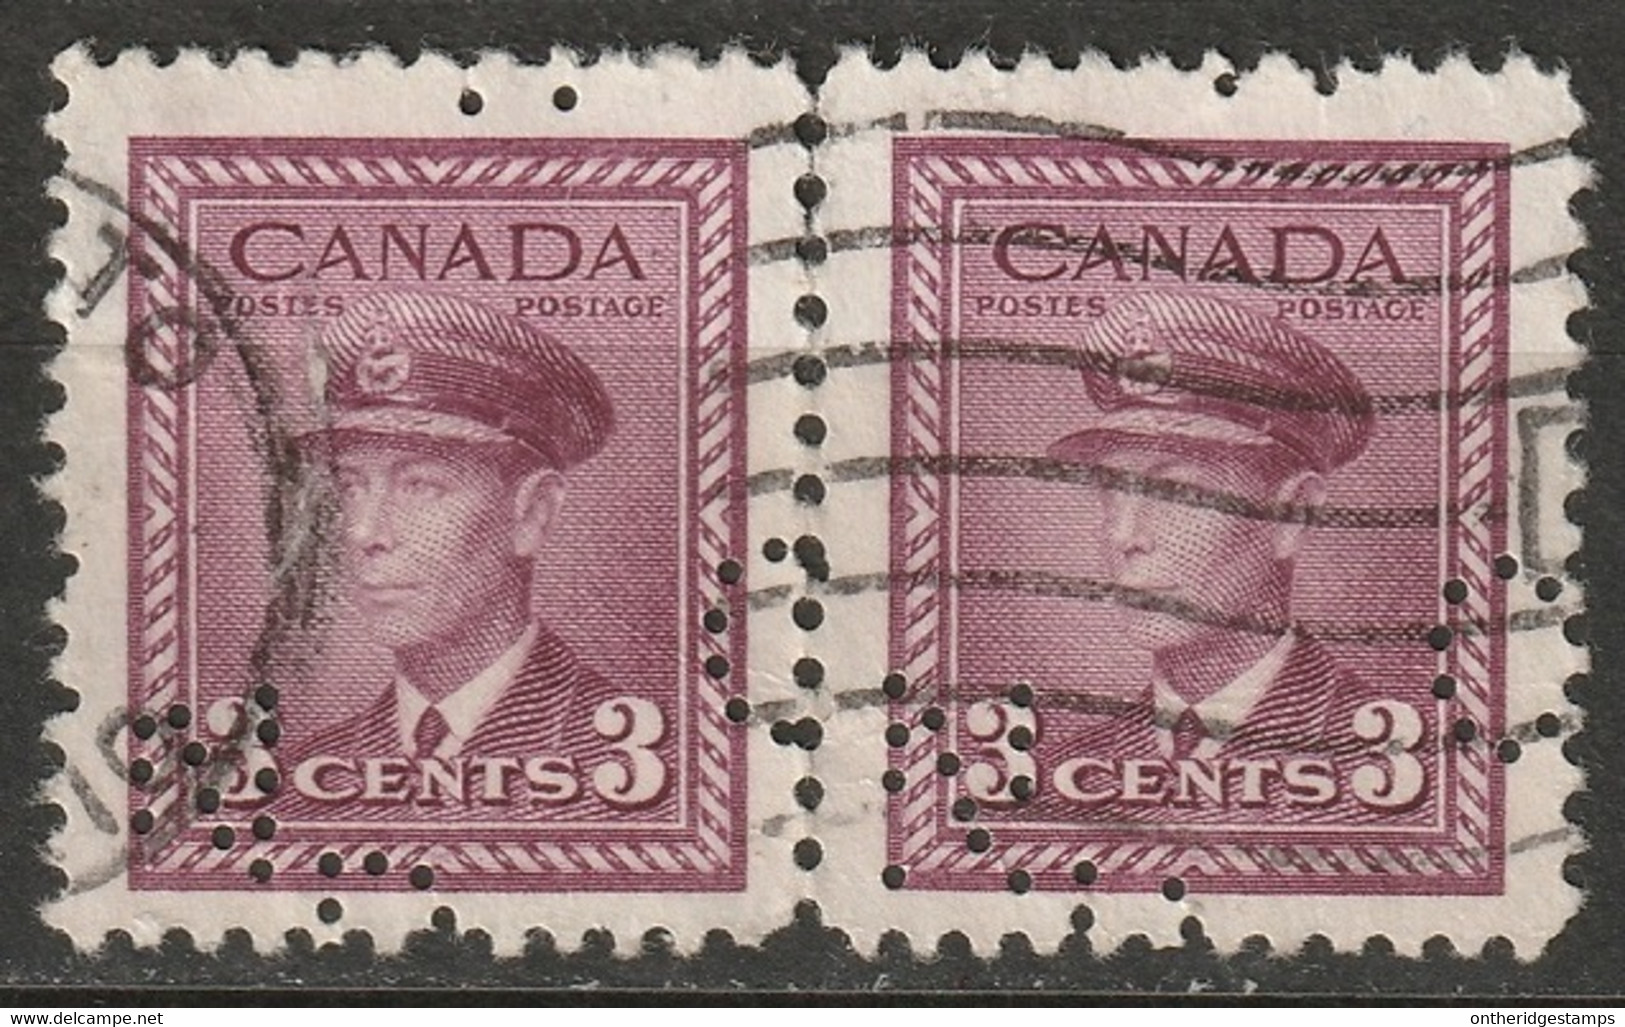 Canada 1942 Sc 252  Pair Used "CNR" (CN Rail) Perfin - Perfin